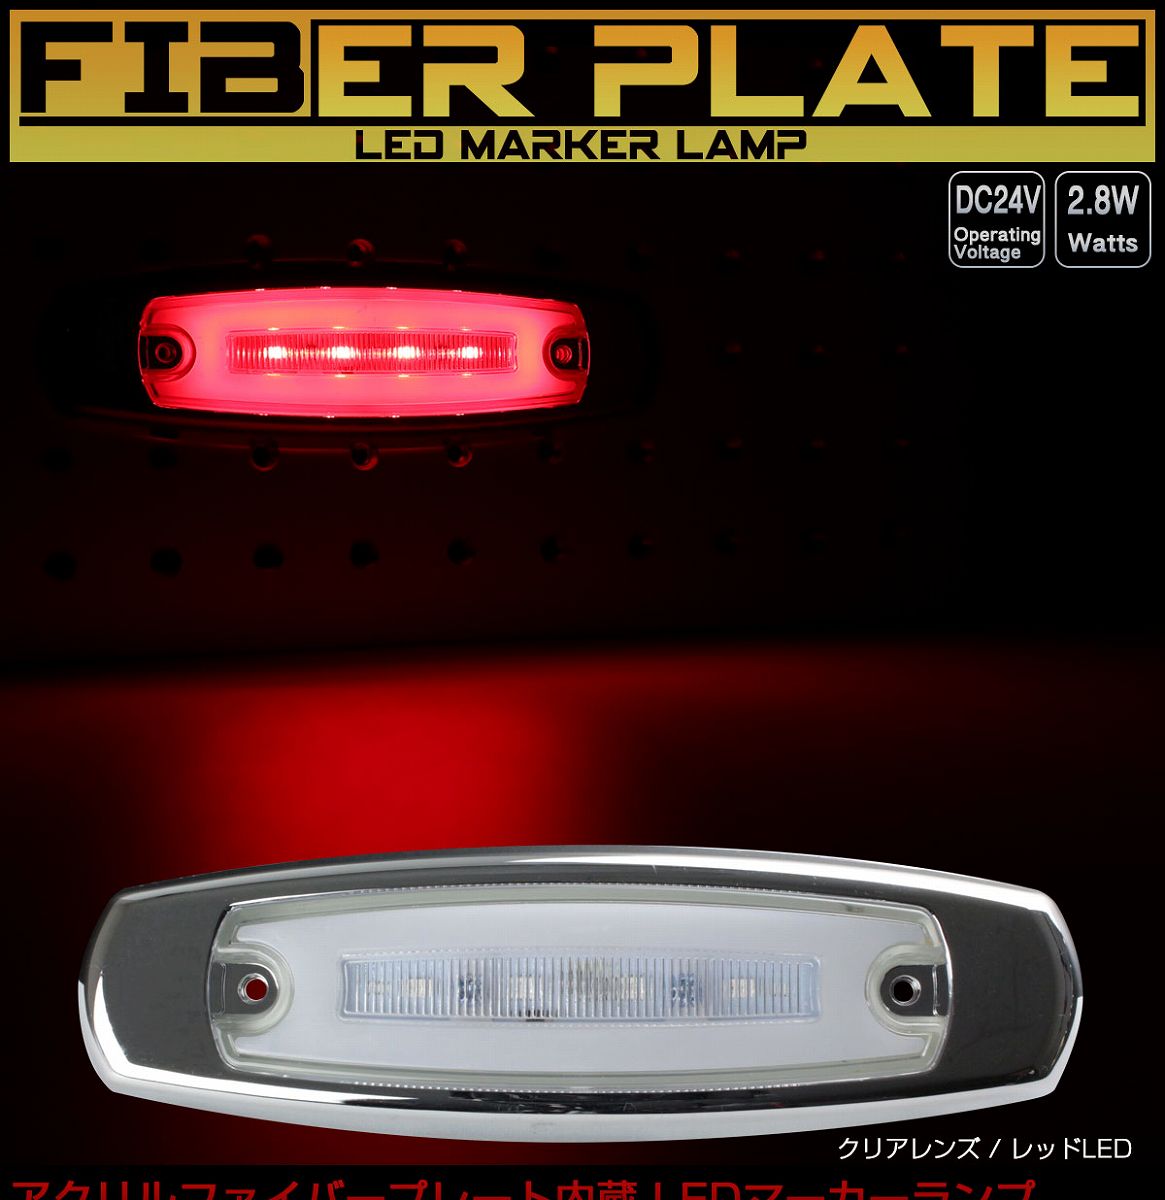 LED スリム マーカーランプ サイドマーカー アクリルプレート内蔵 面発光 F-330-338